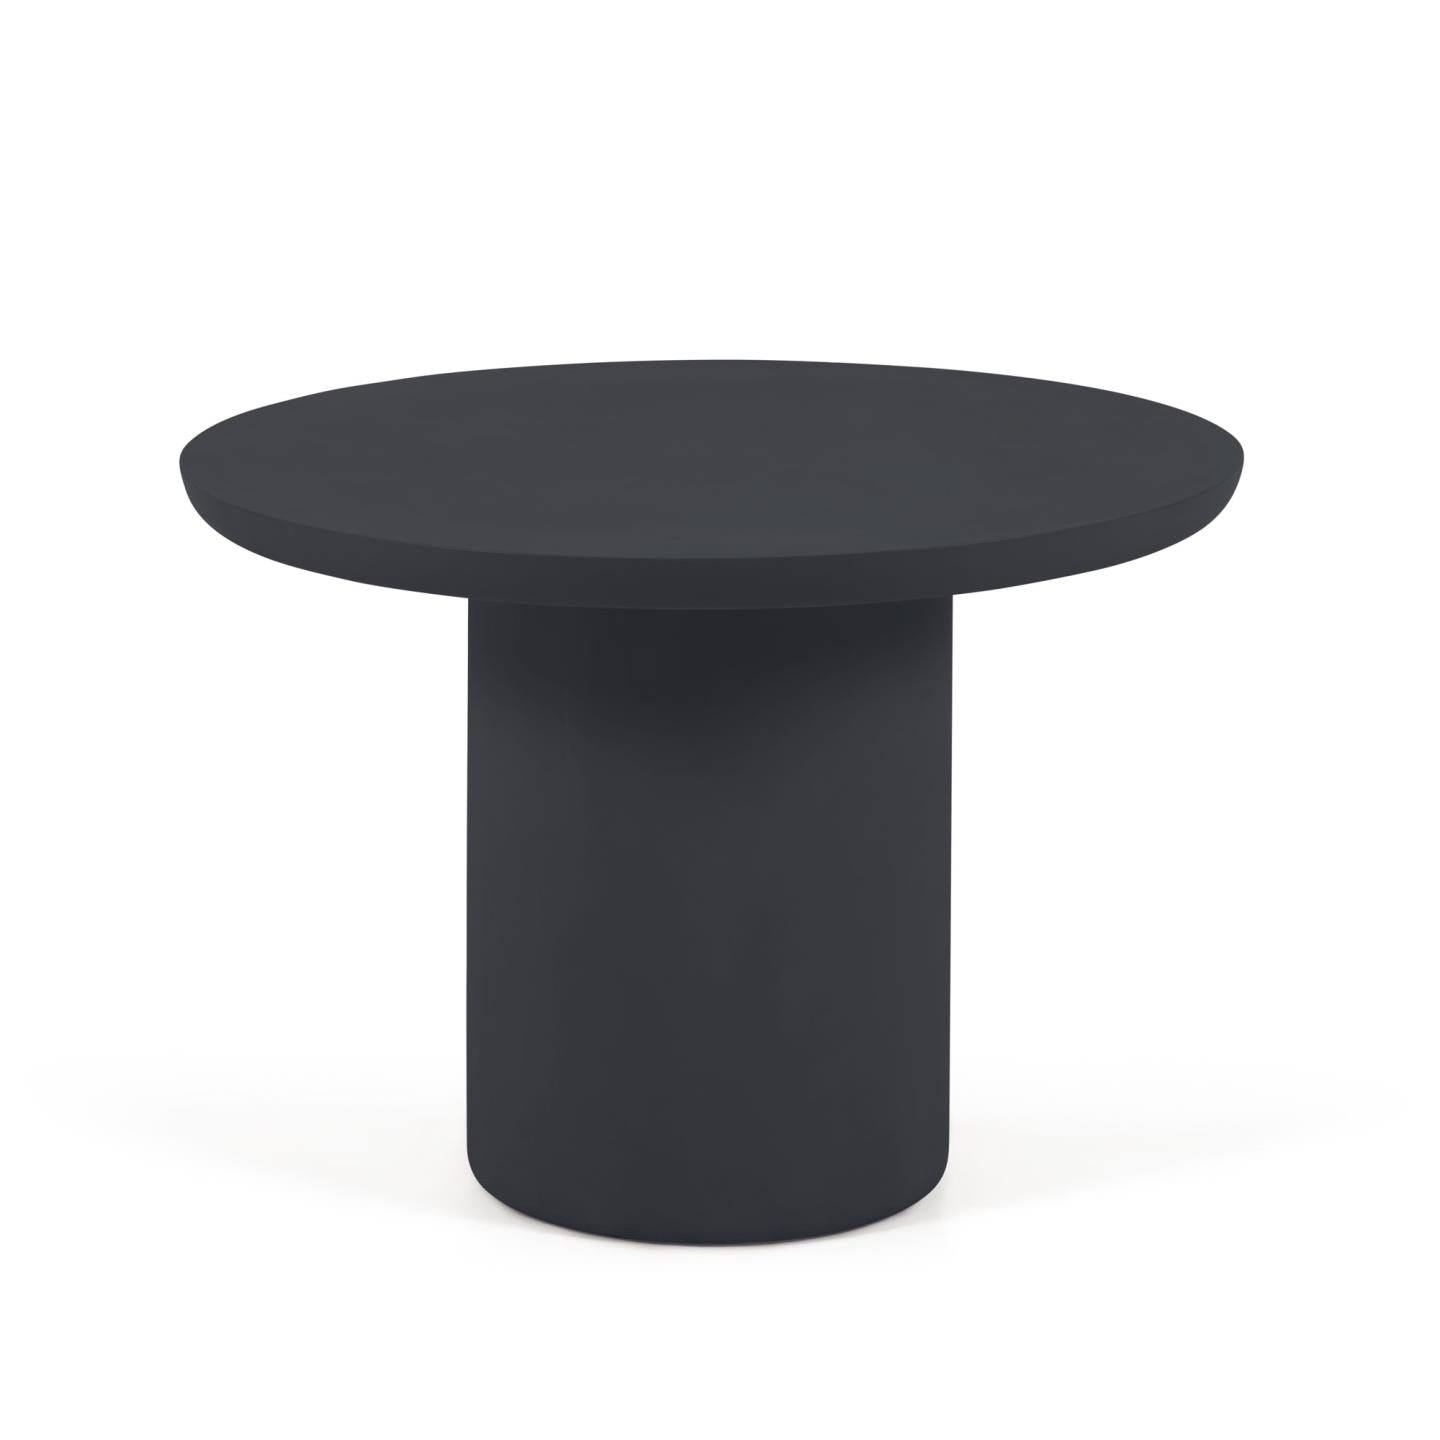 Taimi kerek kültéri asztal betonból, fekete kivitelben Ø 110 cm